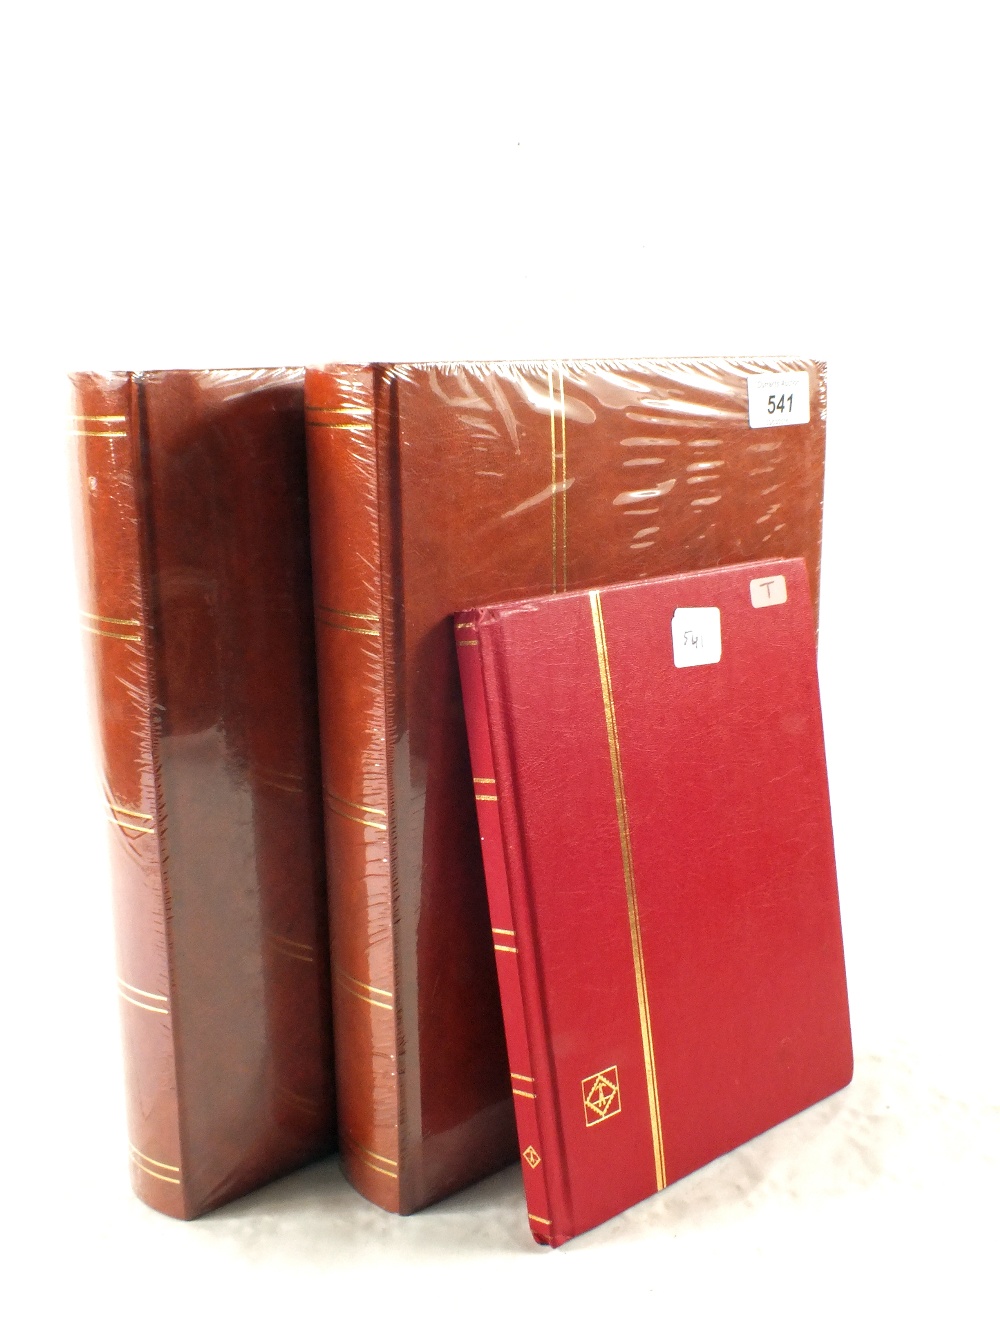 Three unused stock books